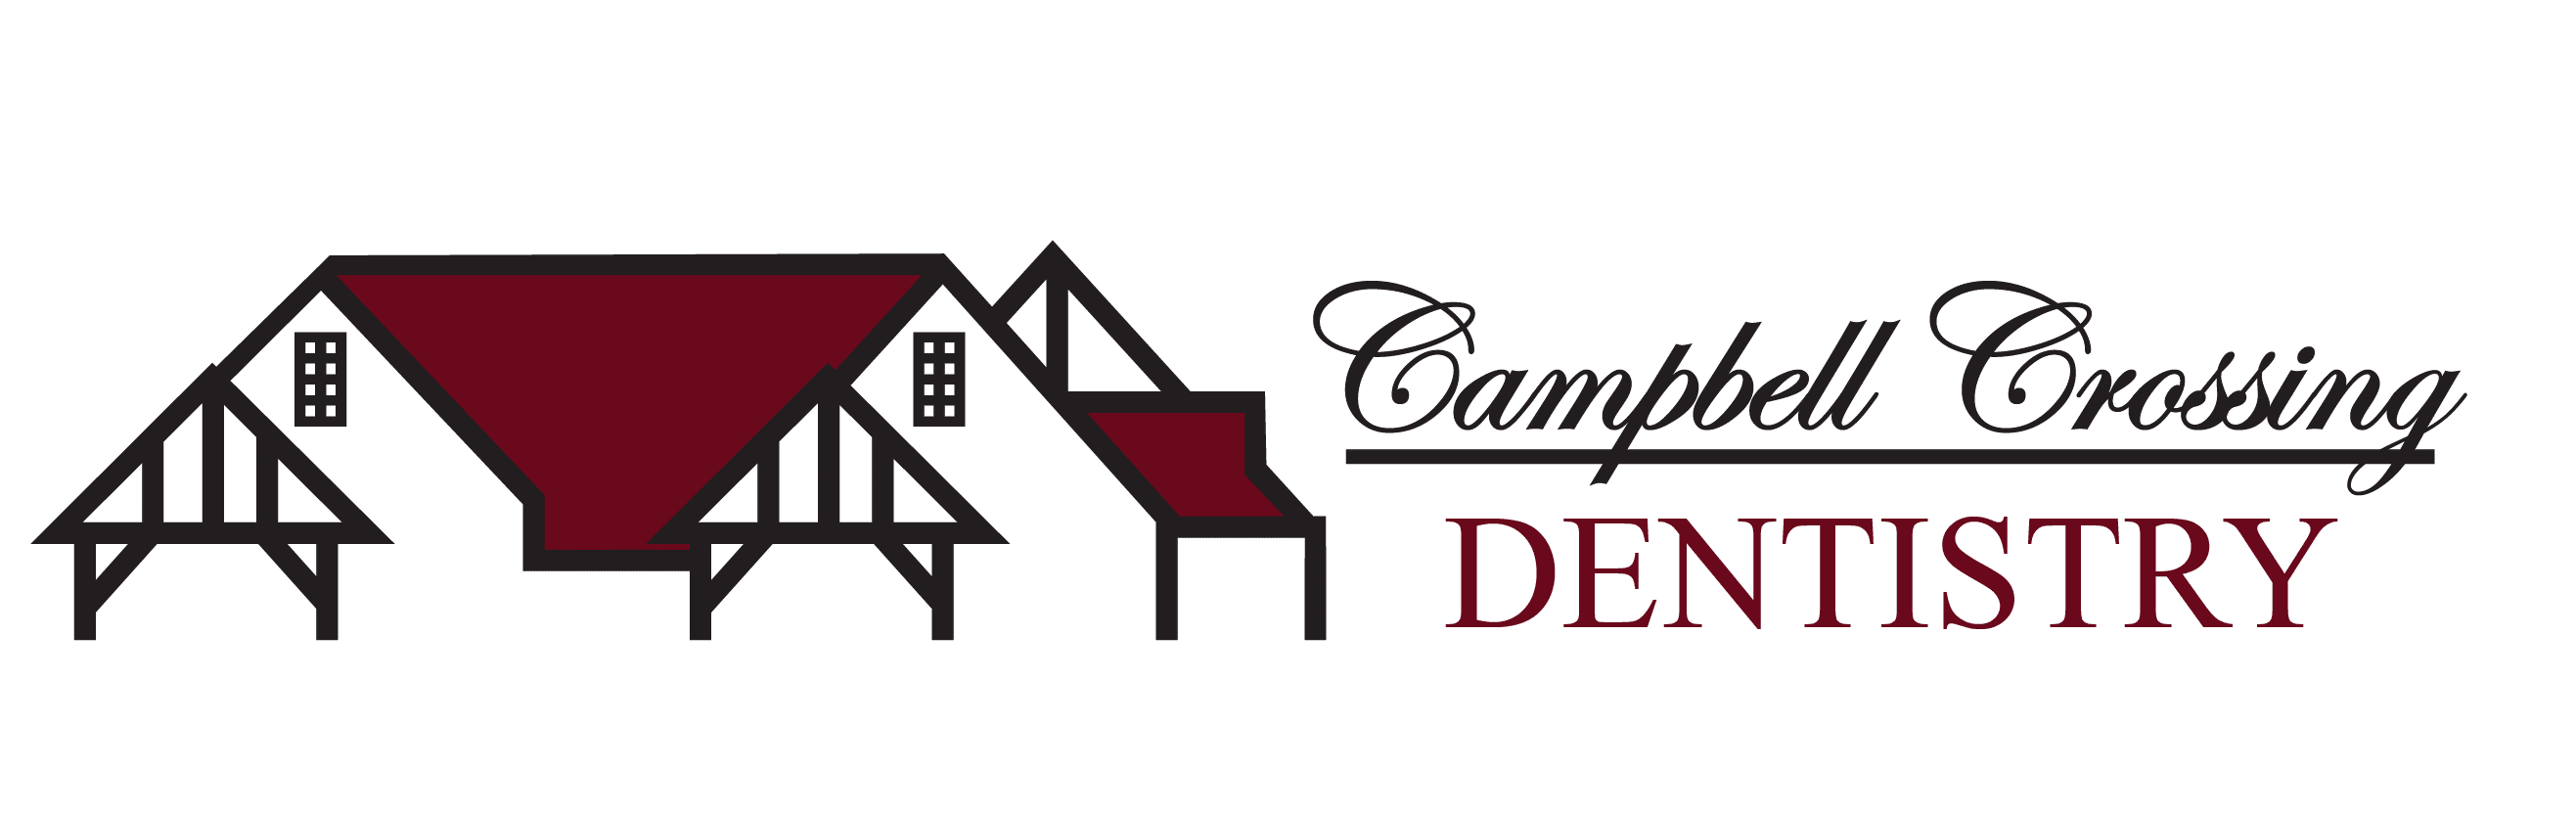 Campbell Crossing Dentistry Logo